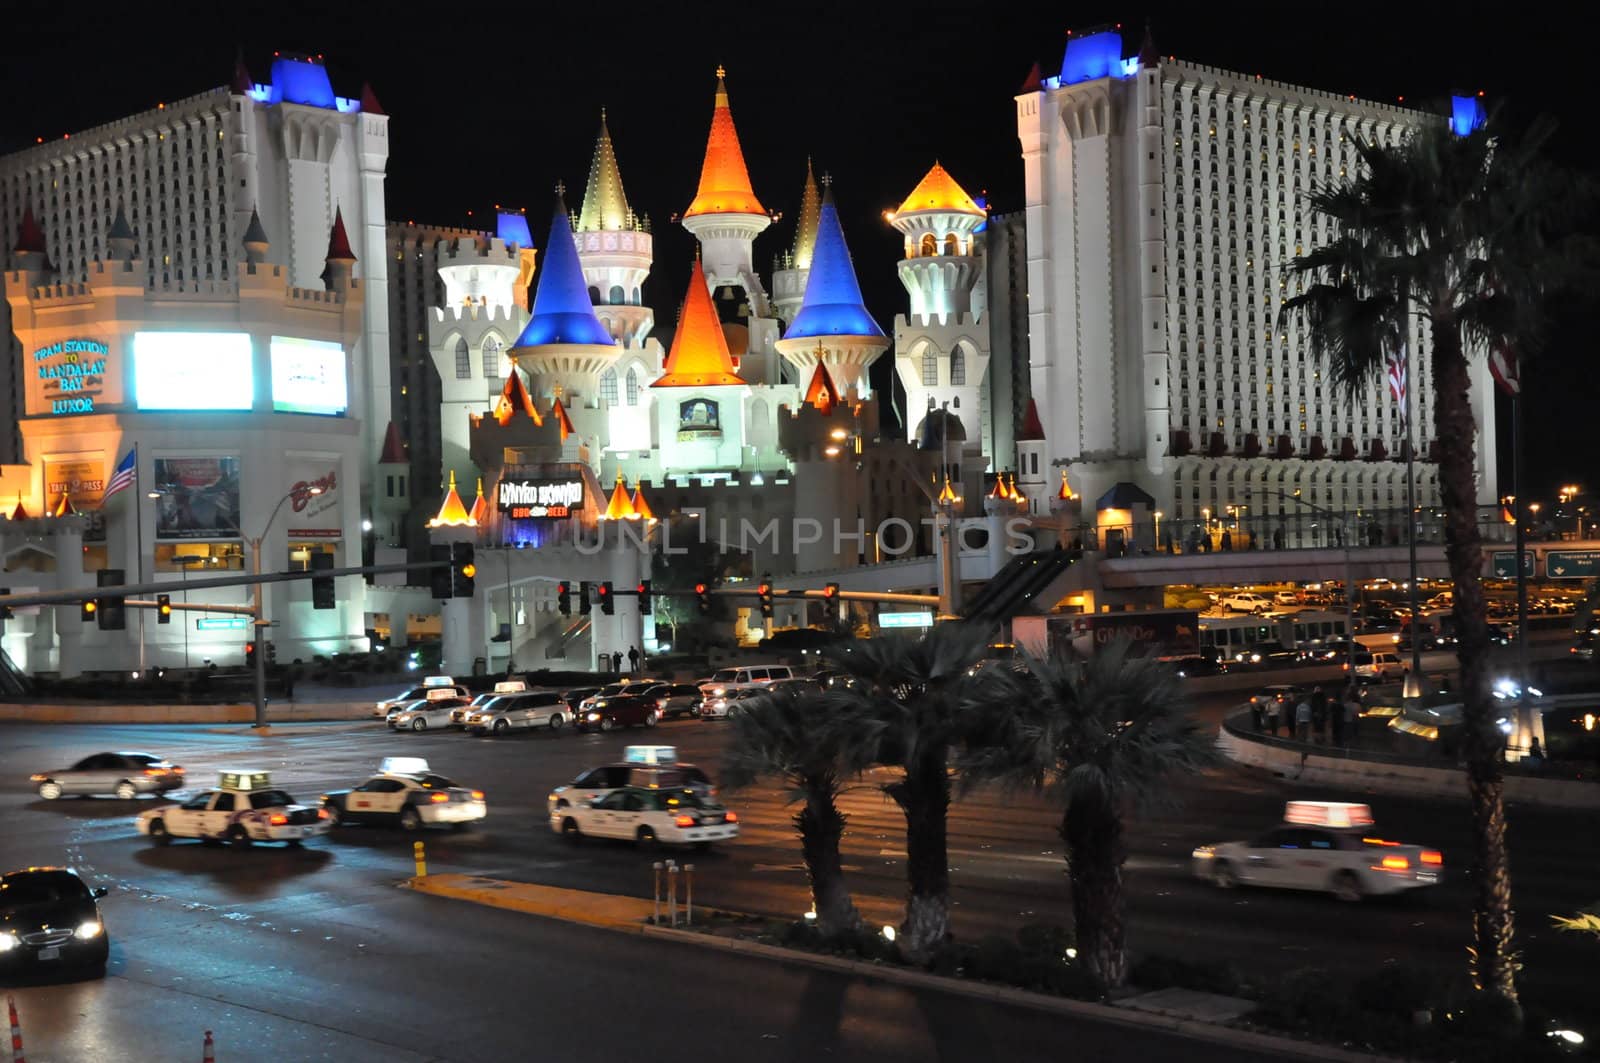 Excalibur Hotel and Casino in Las Vegas, Nevada